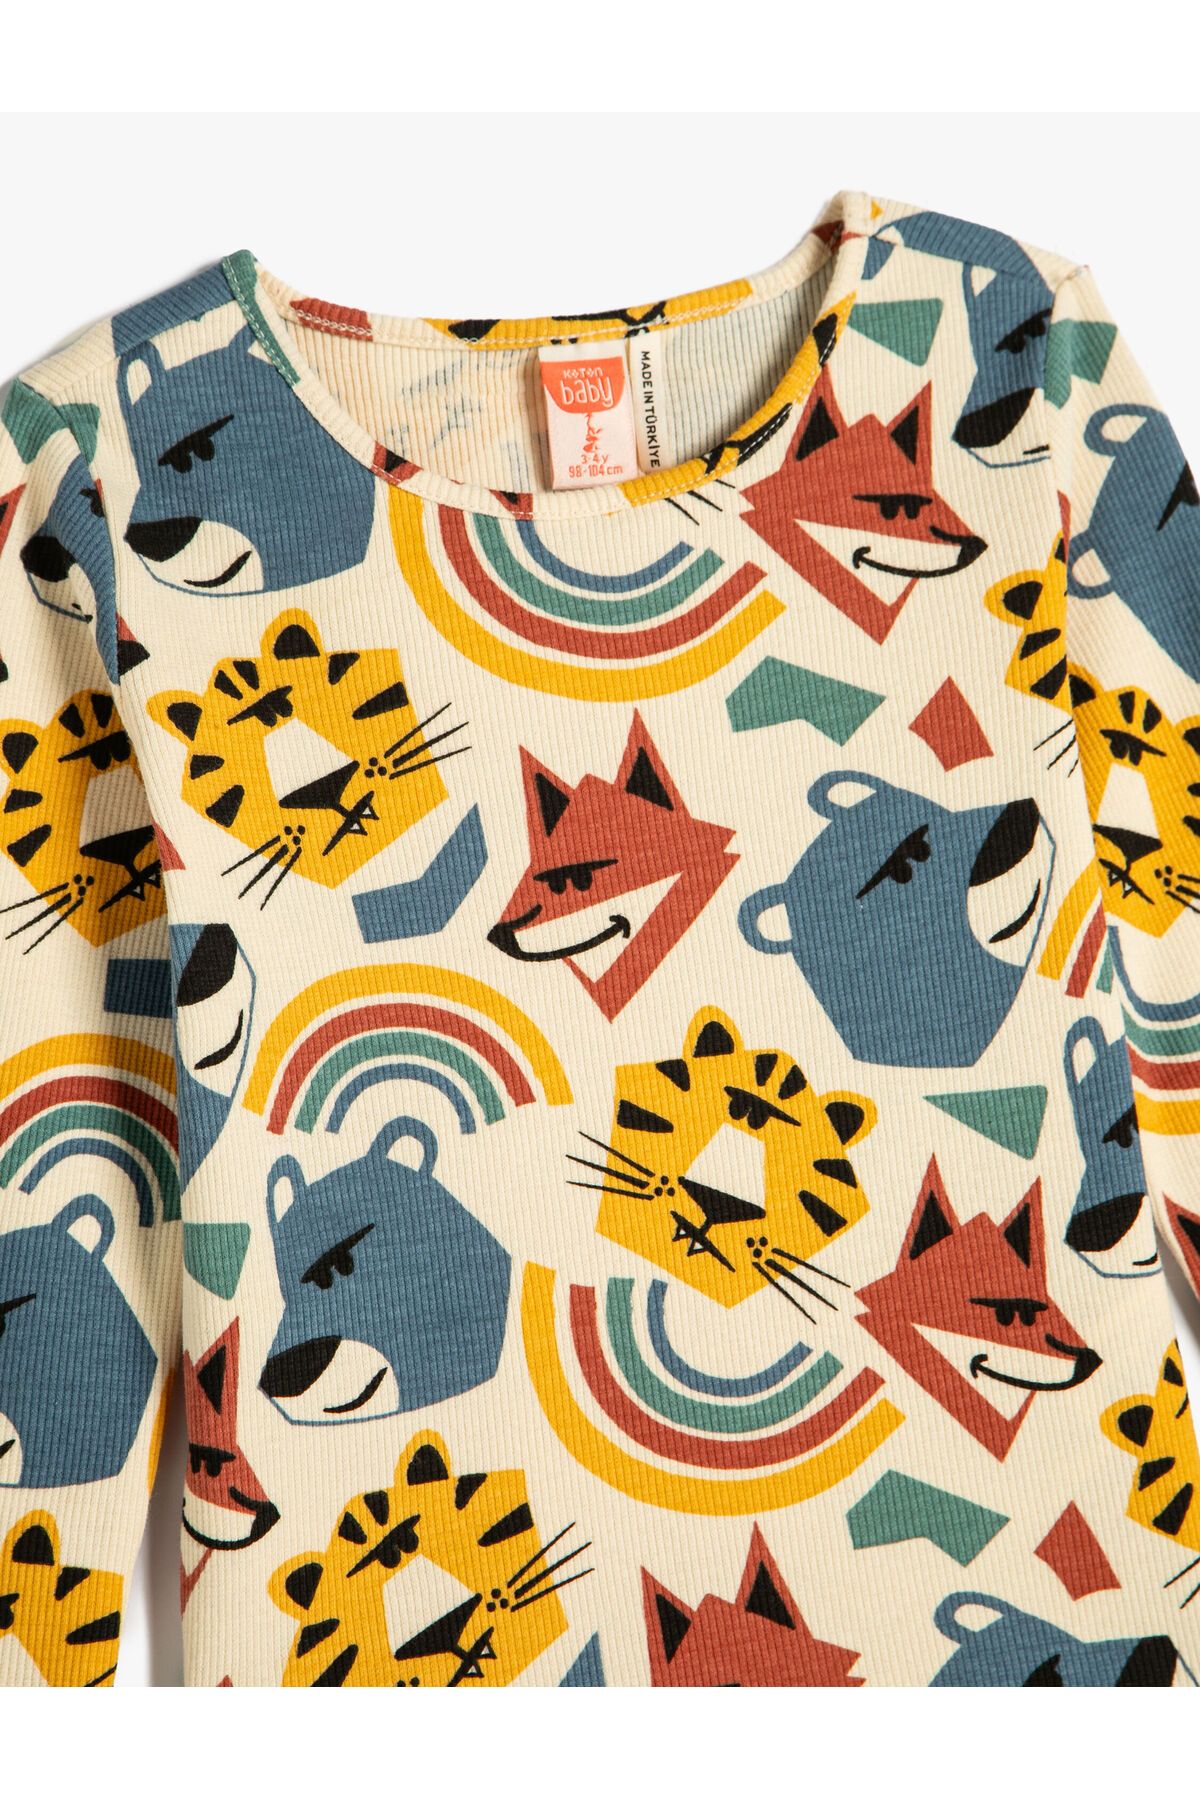 Koton تی شرت آستین بلند یقه خدمه چاپ شده حیوانات